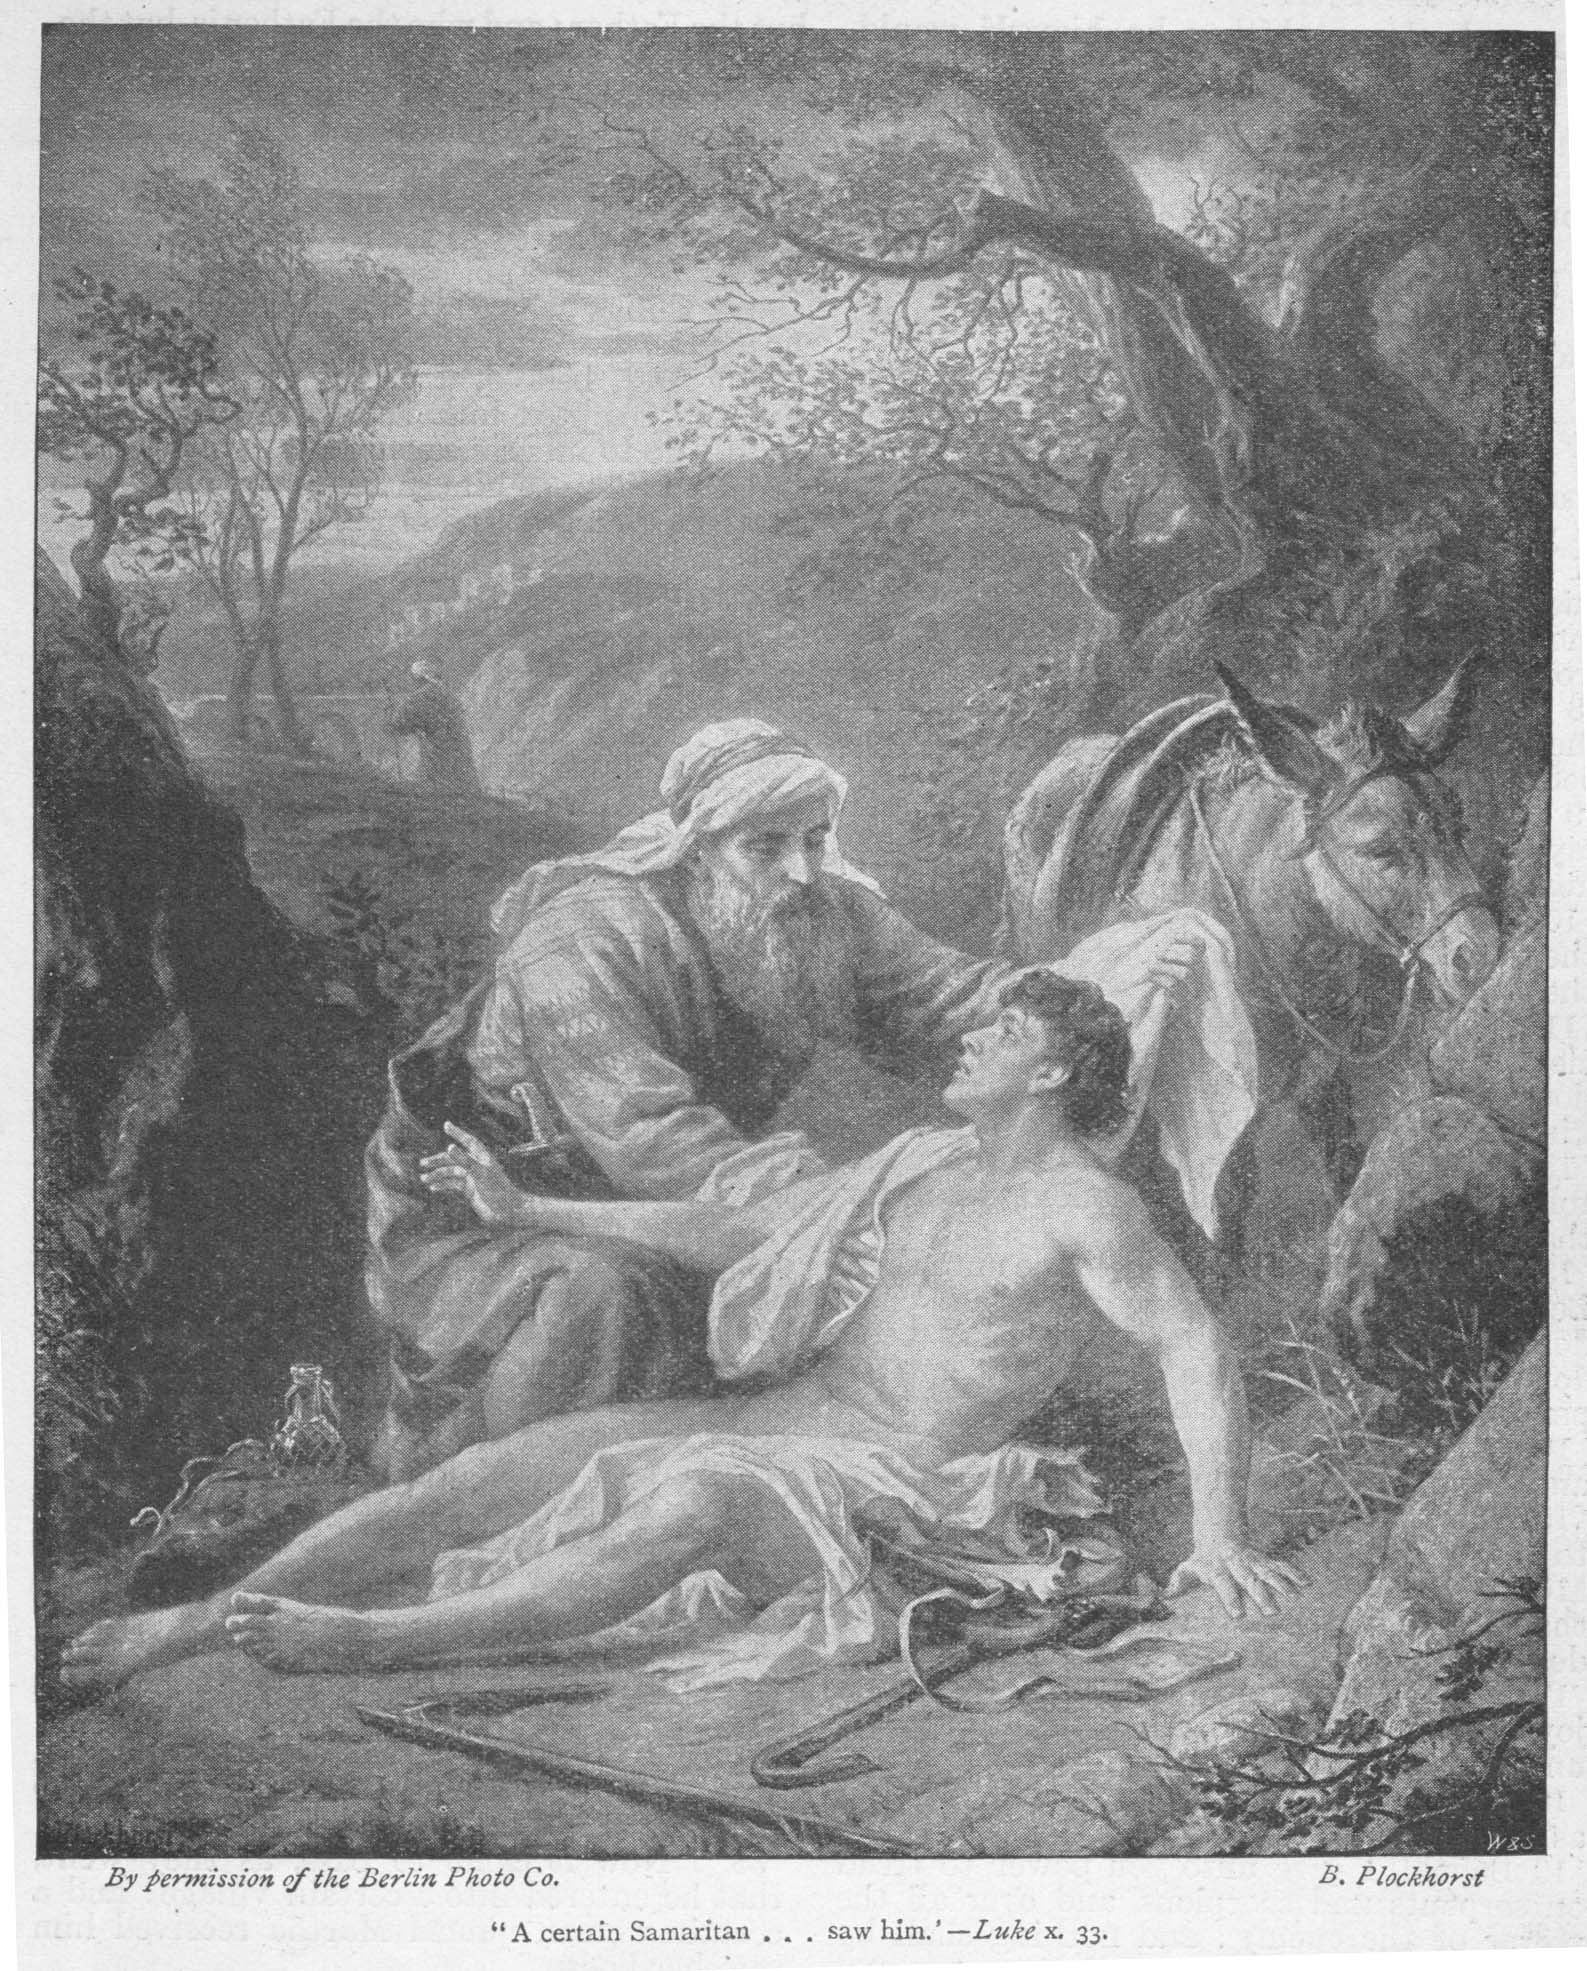 LUKE 10 - 33 A certain Samaritan